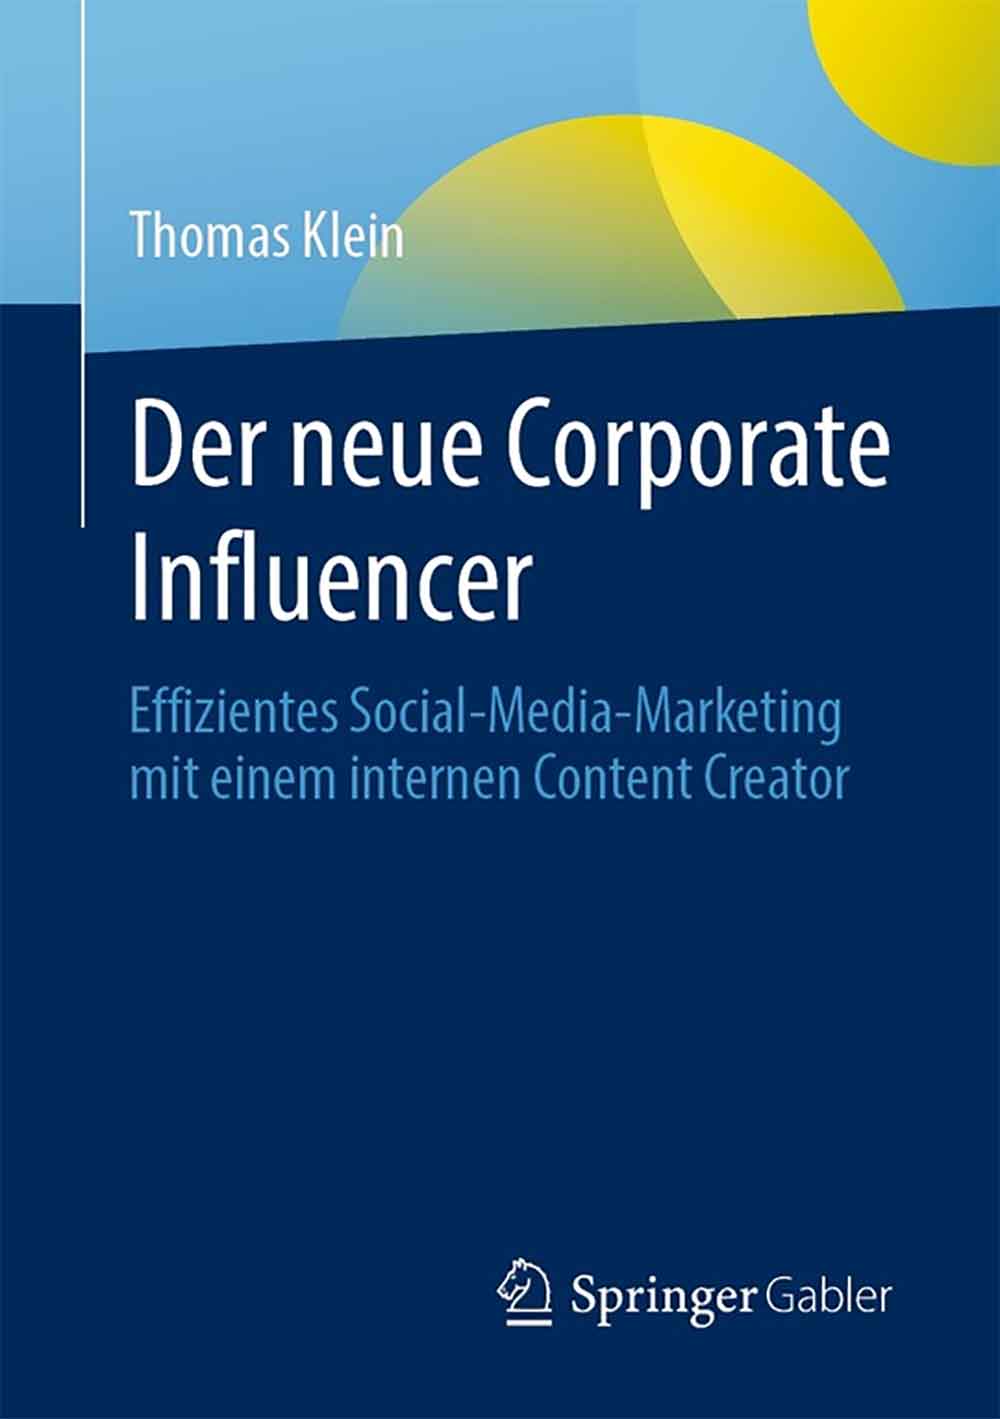 Anzeige: Lesetipps für Gütersloh: Thomas Klein, »Der neue Corporate Influencer«